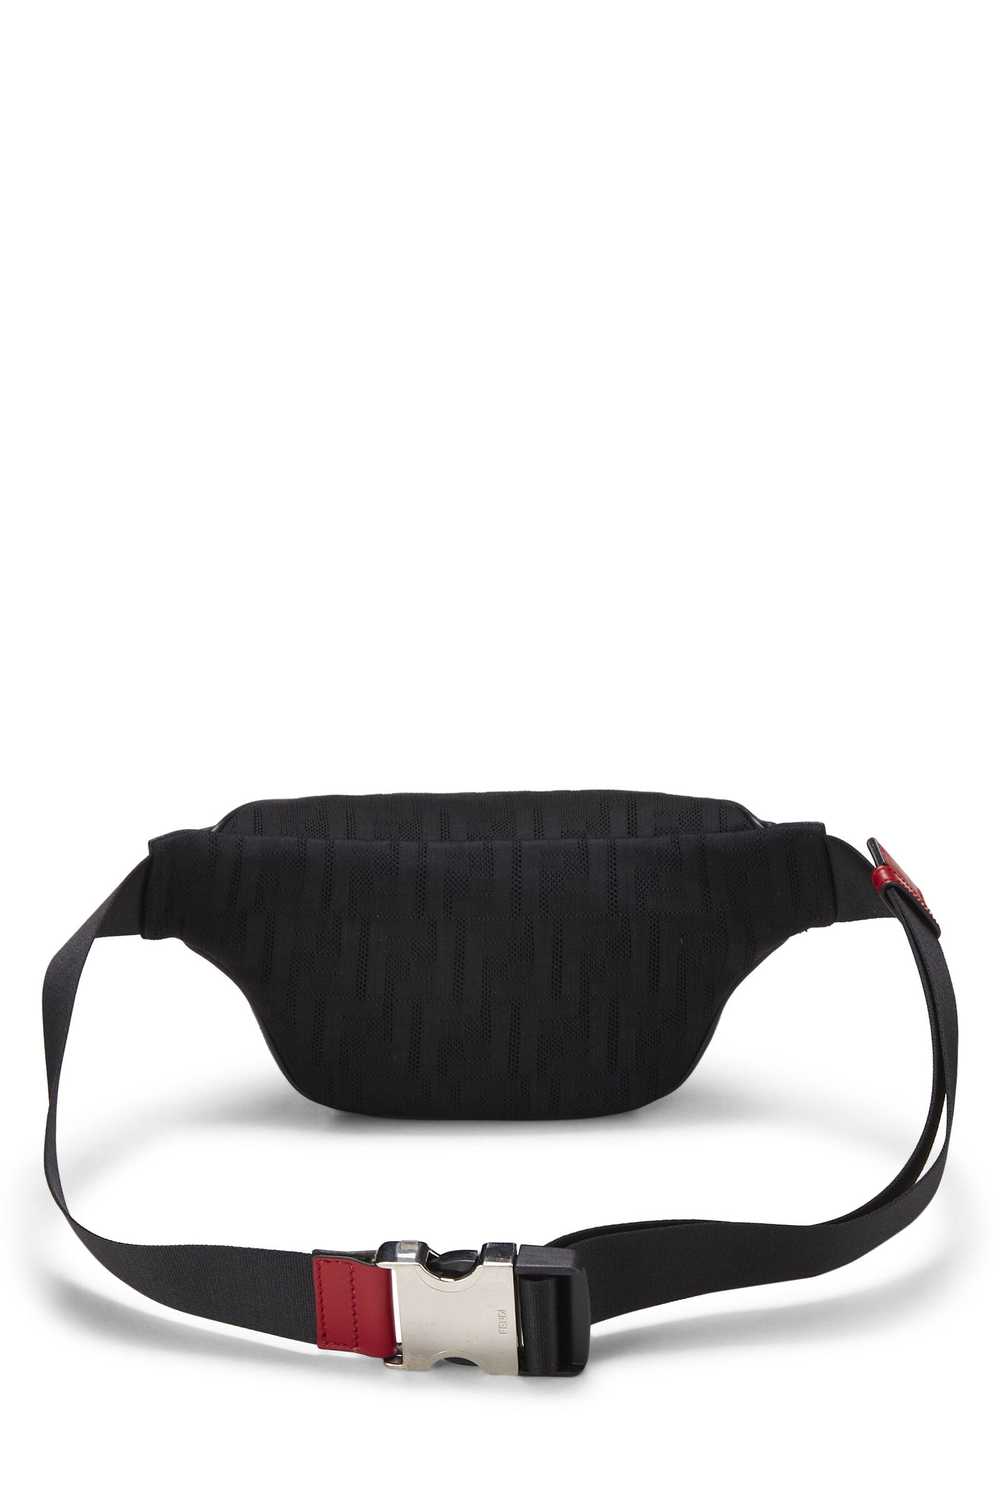 Black Mesh Zucca Belt Bag - image 4